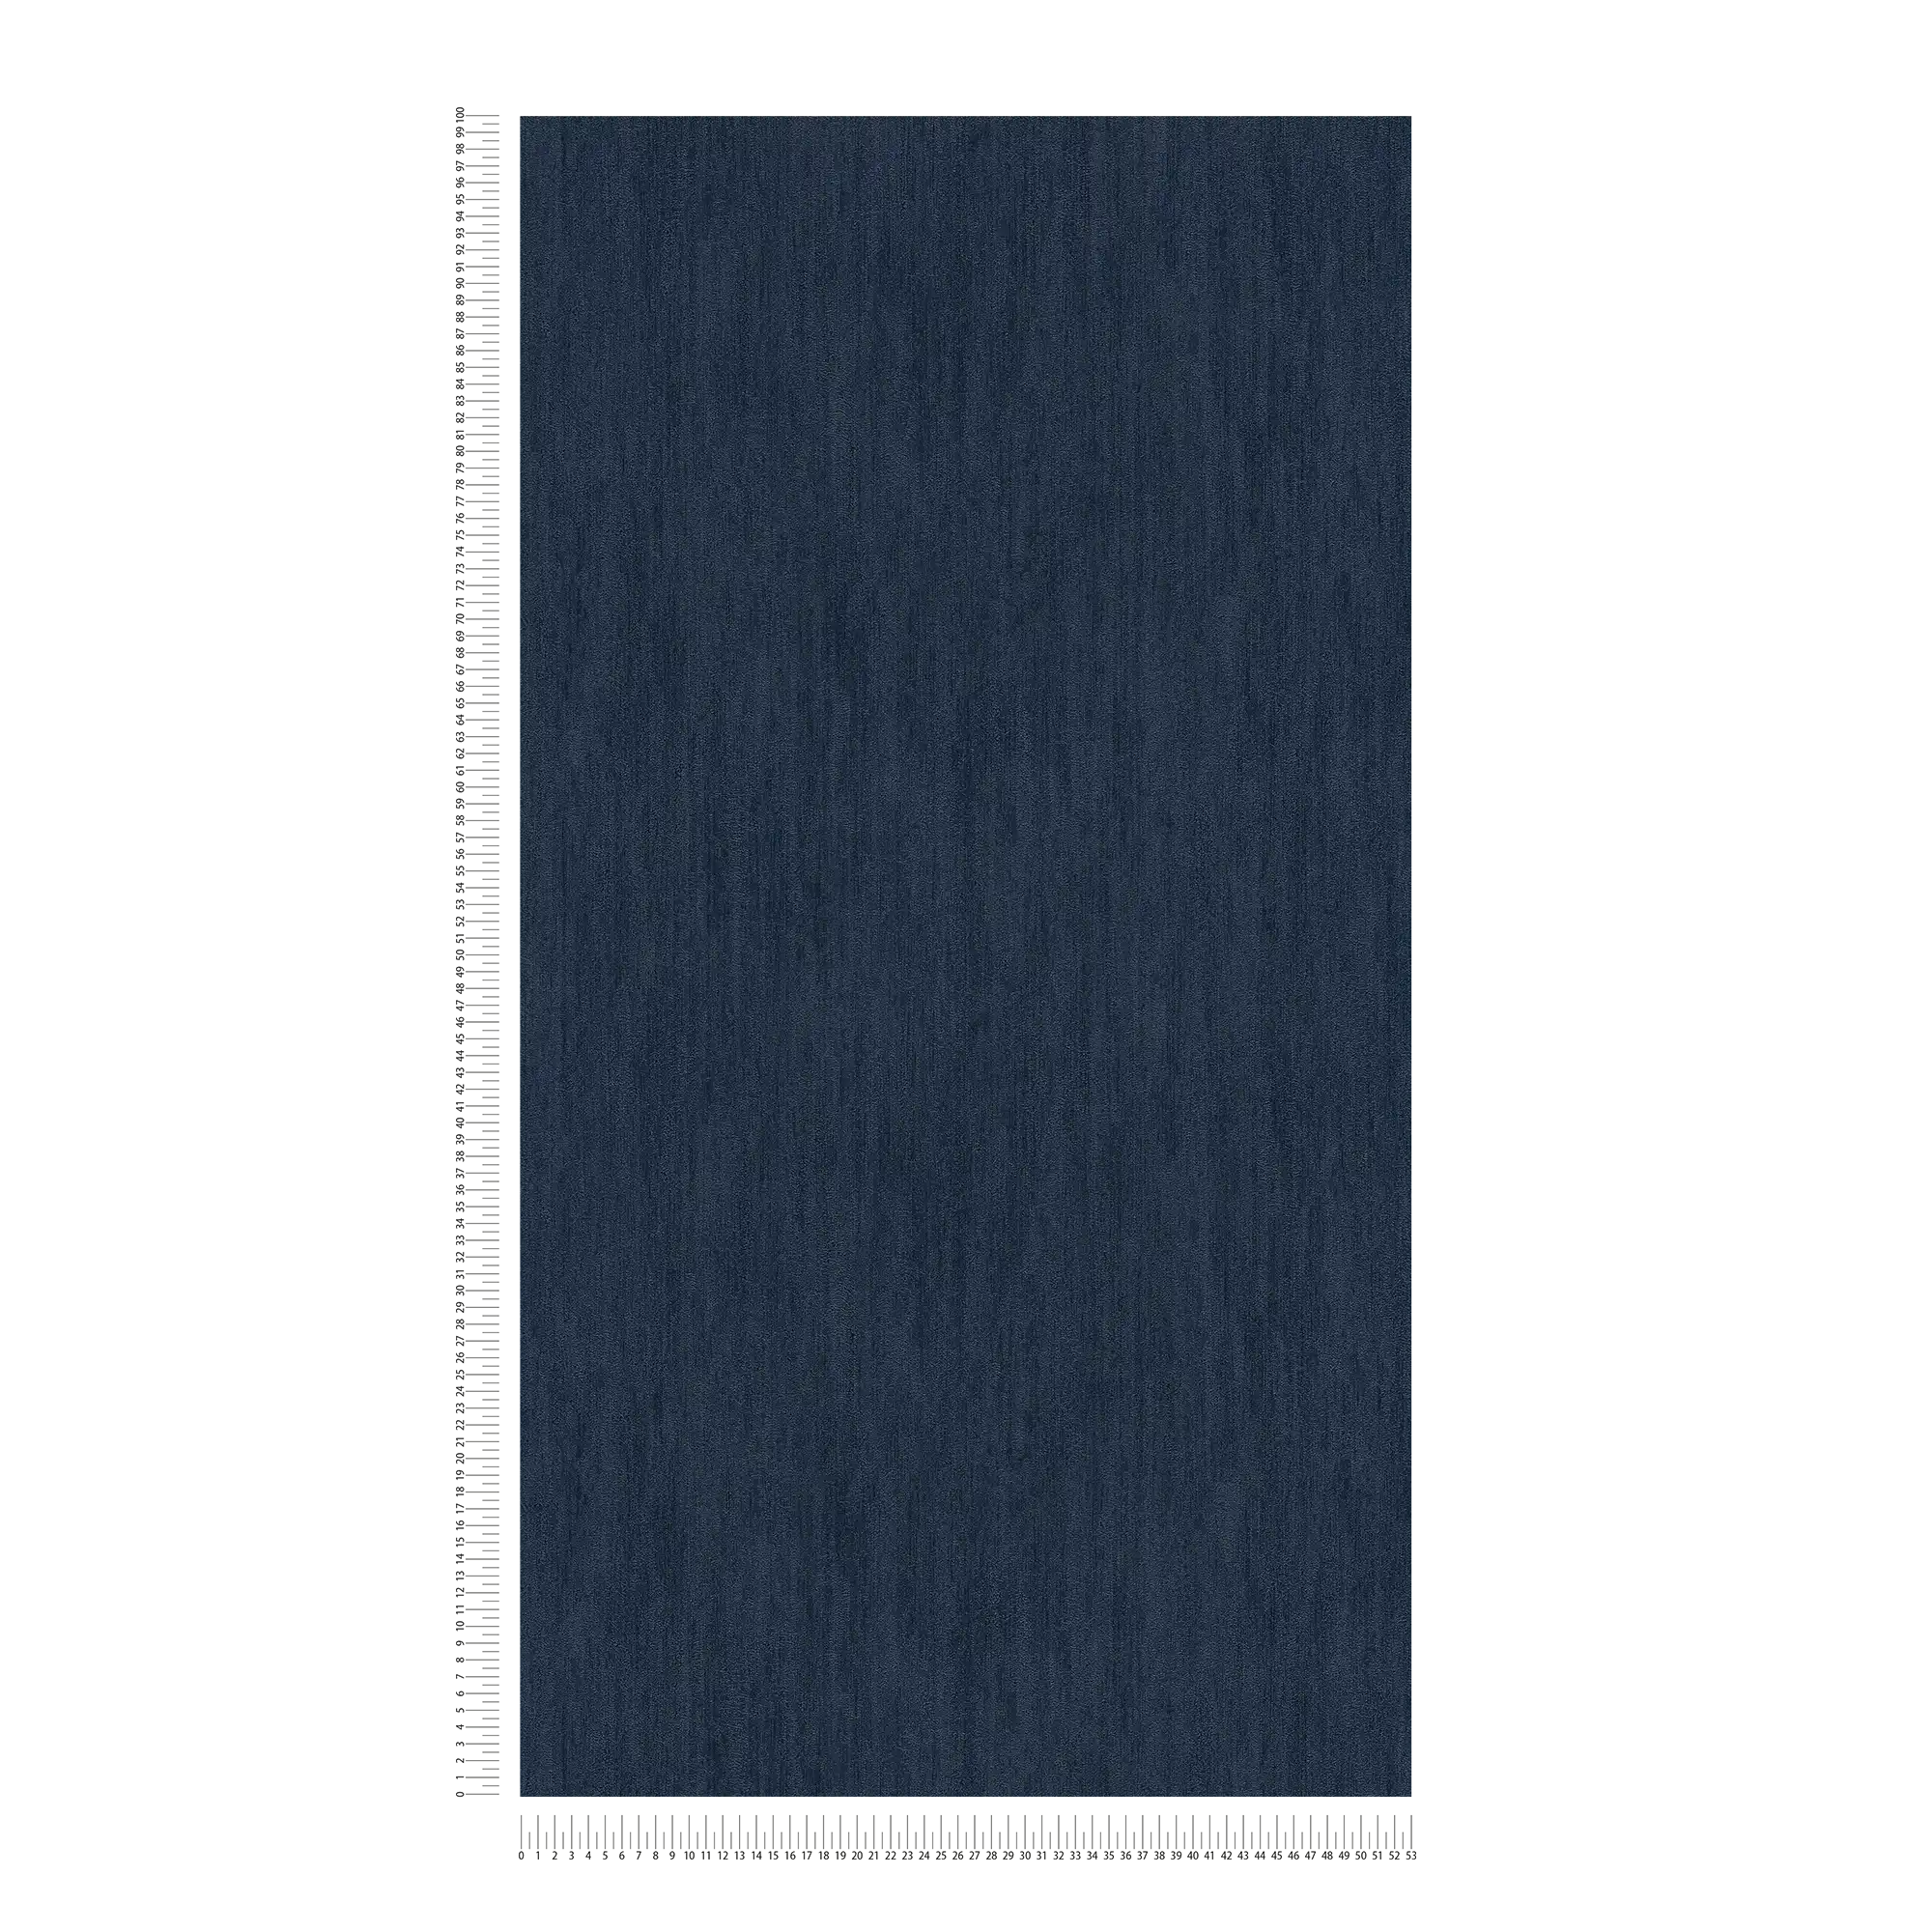             Wallpaper dark blue with gloss effect & natural texture design
        